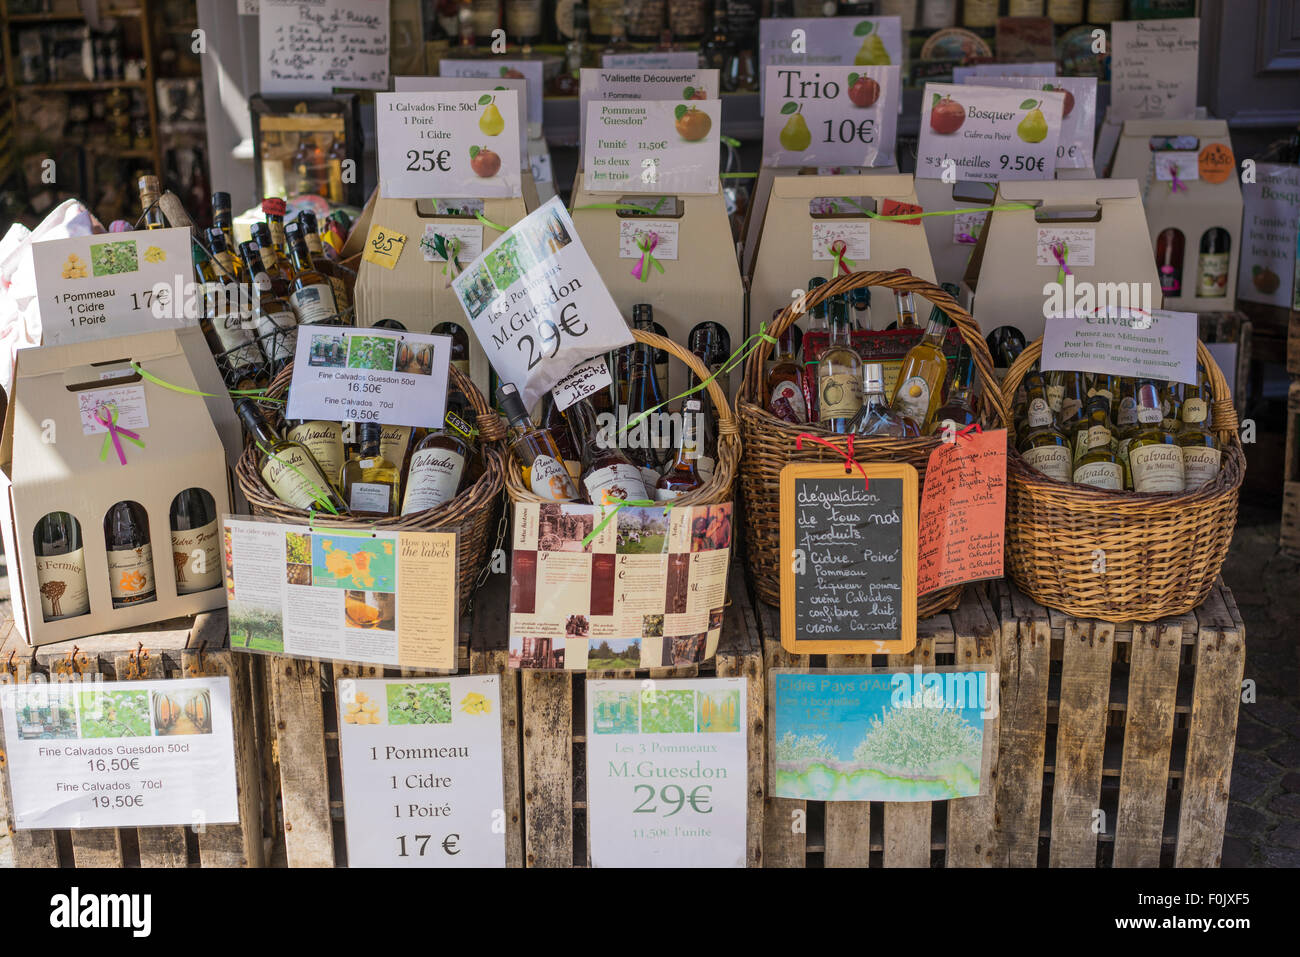 Calvados et cidre à vendre à Honfleur, Normandie, France. Banque D'Images